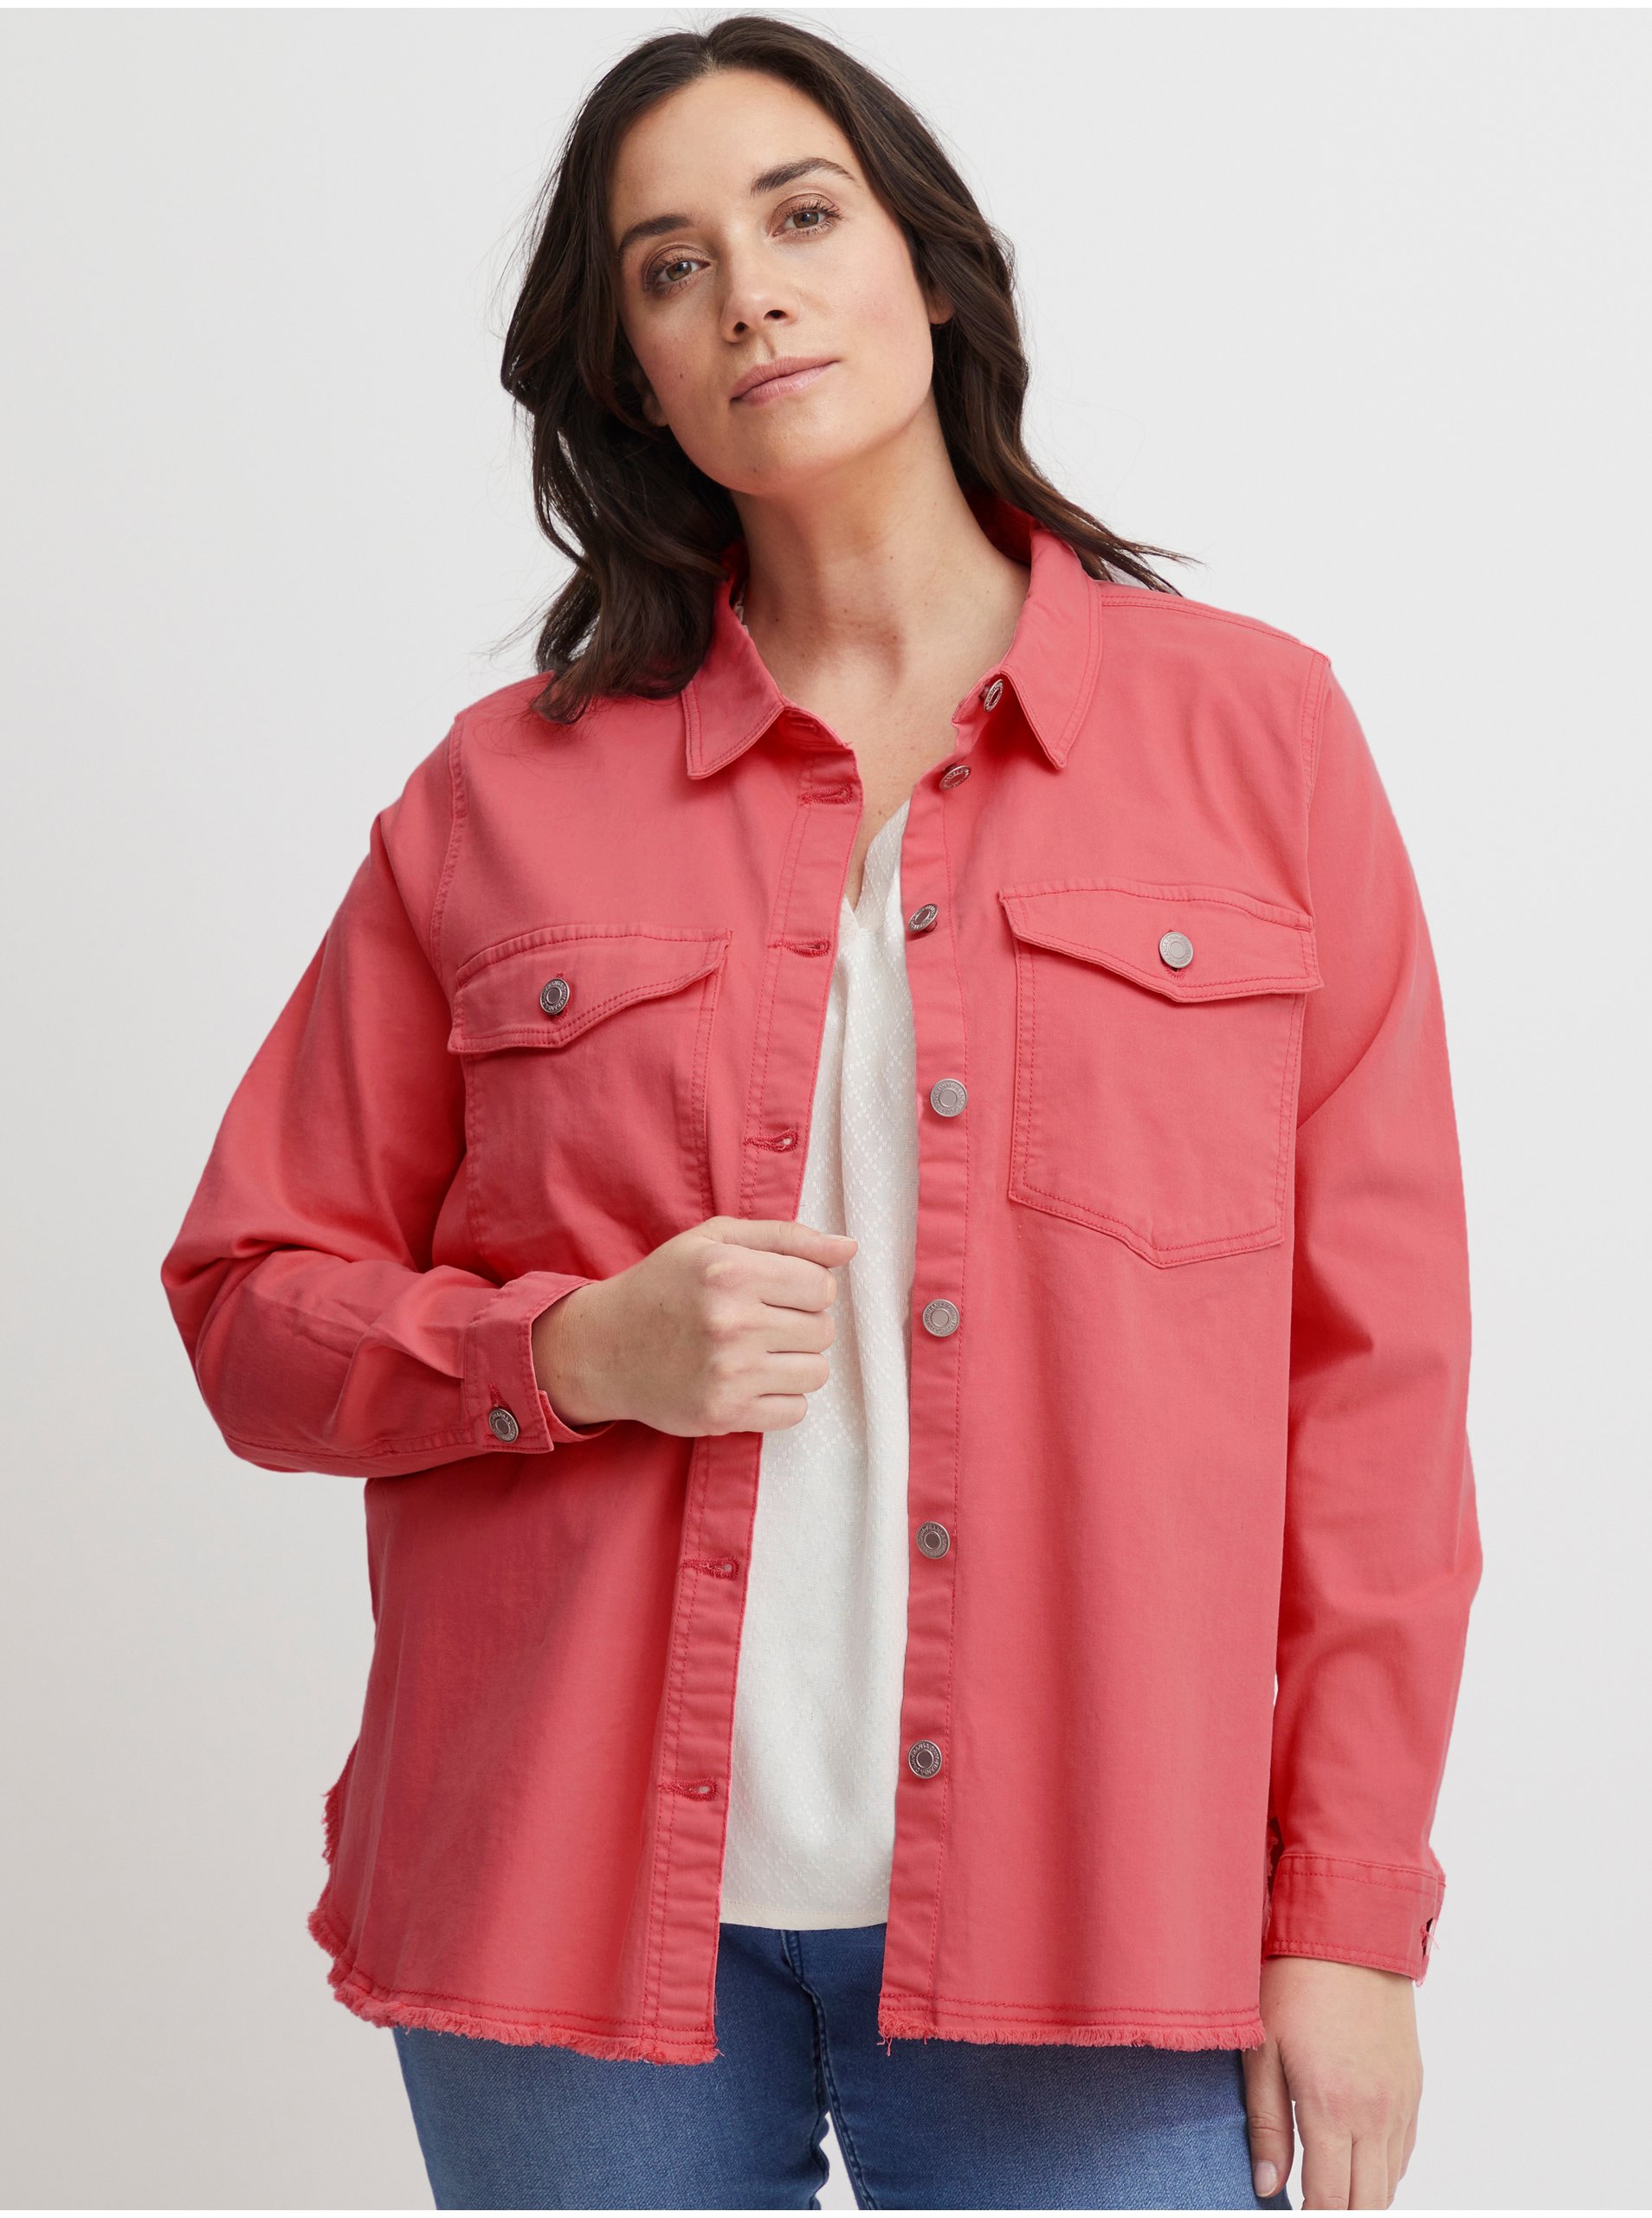 Pink Denim Shirt Jacket Fransa - Women